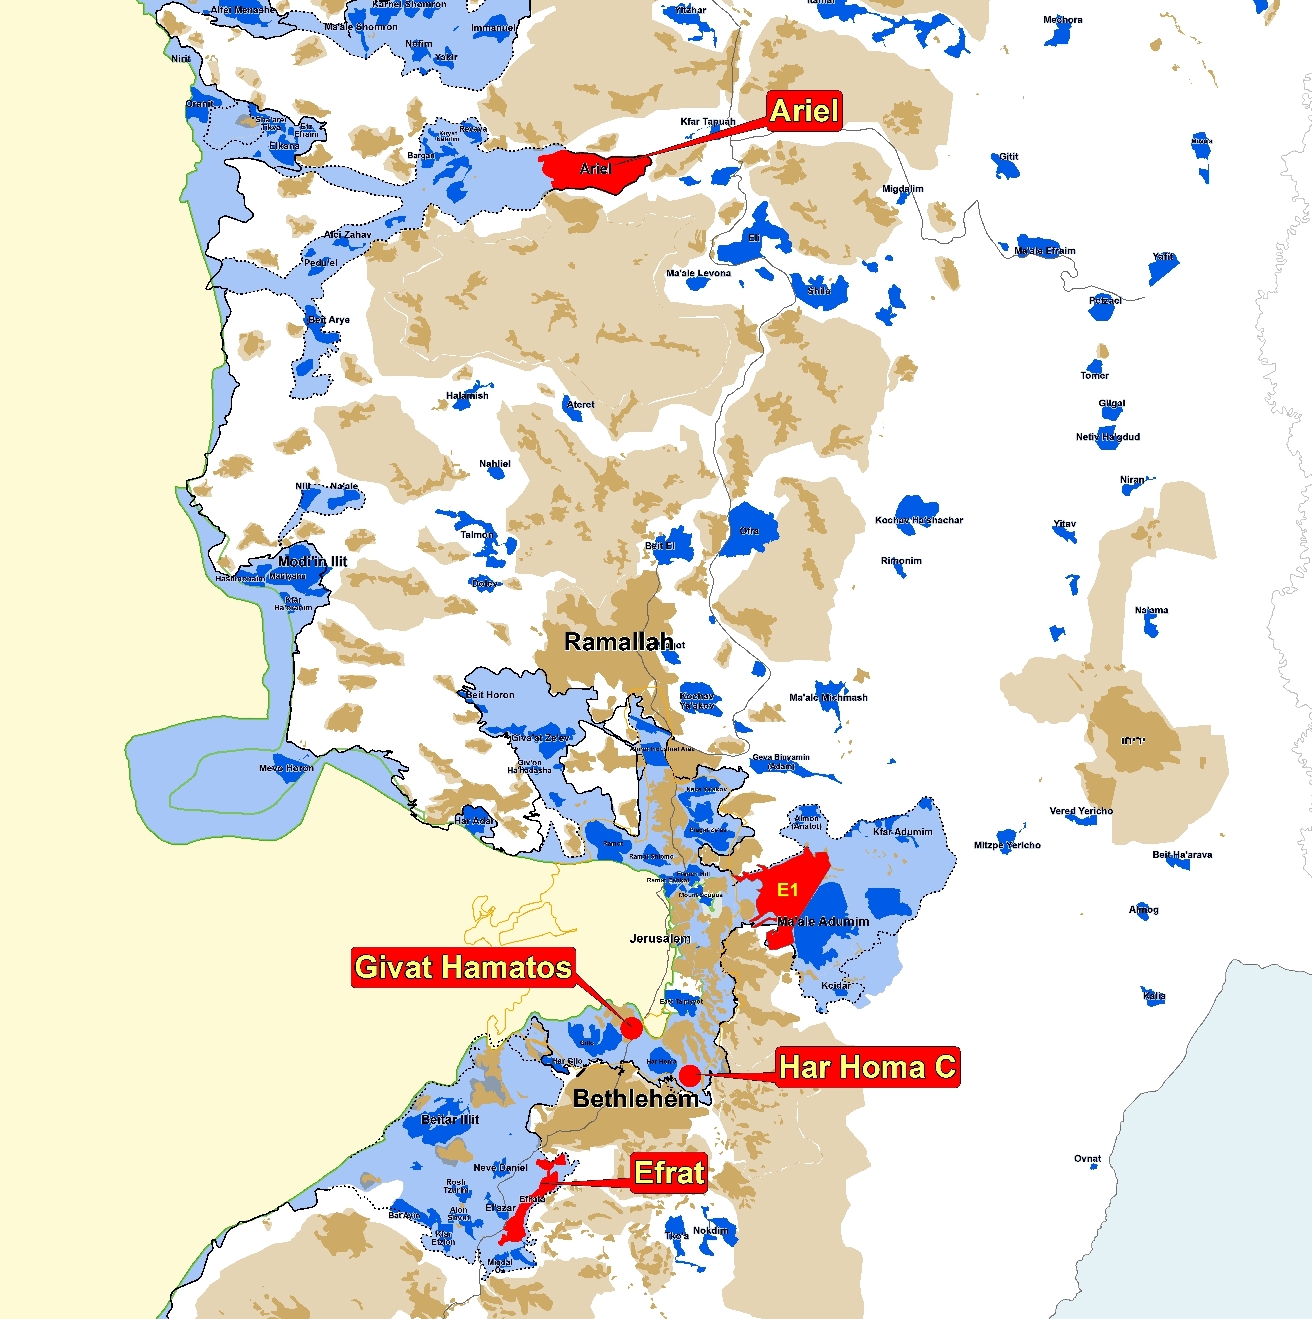 Em azul, assentamentos israelenses em territórios ocupados; em vermelho áreas que podem inviabilizar um Estado Palestino viável